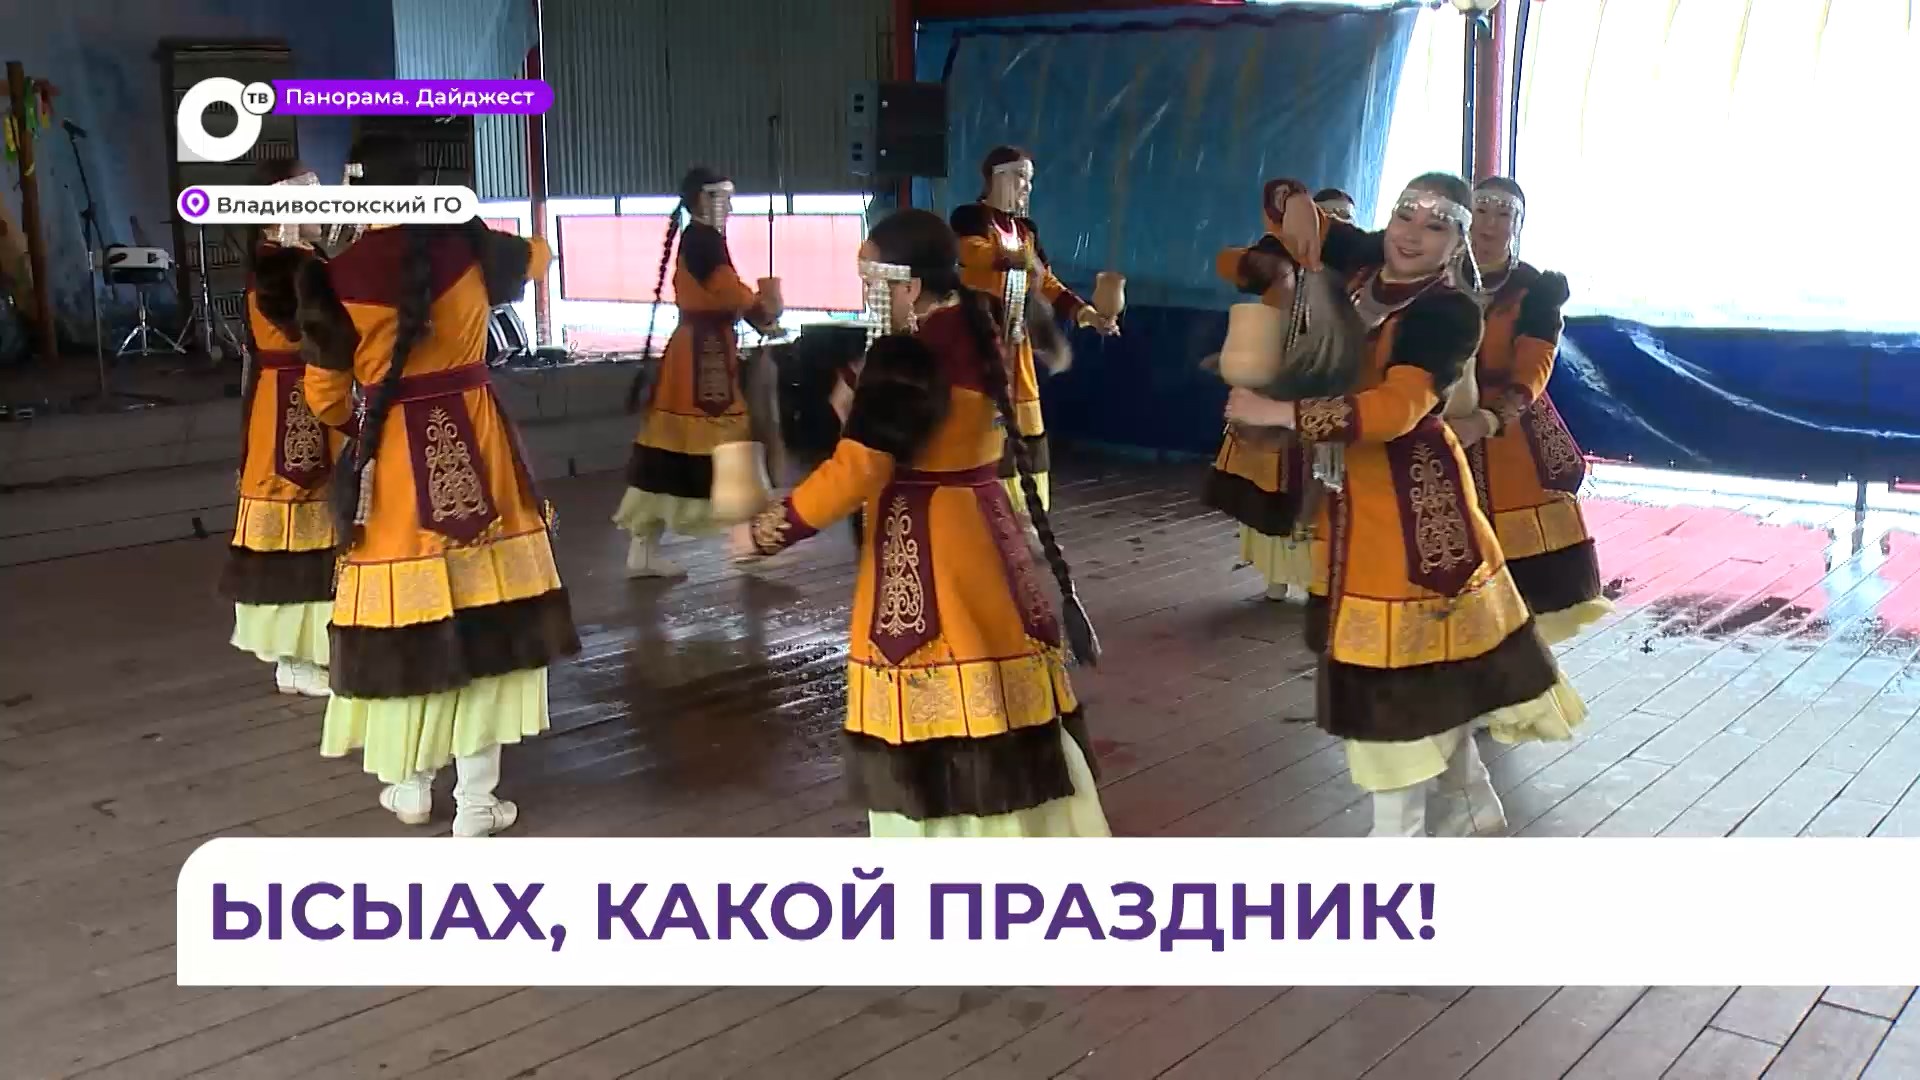 В ярких национальных костюмах с песнями и плясками якуты отмечают свой праздник Ысыах в Приморье